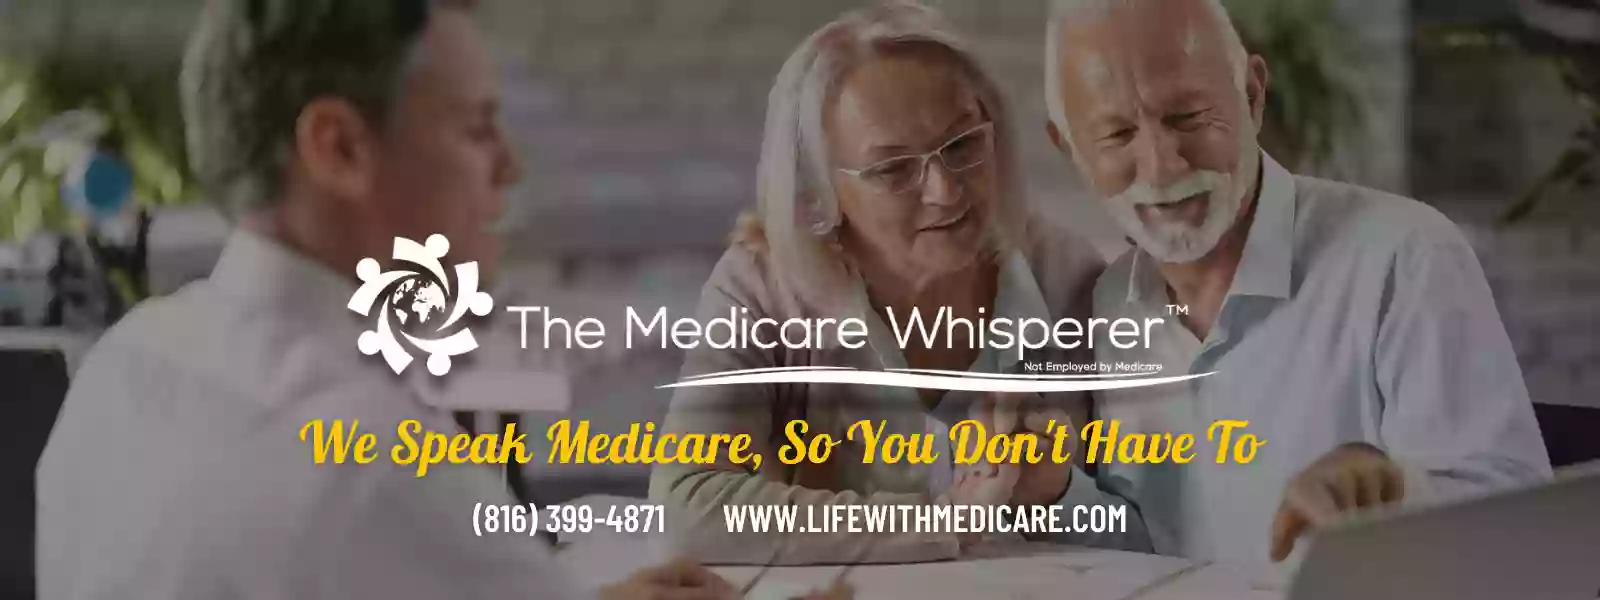 The Medicare Whisperer